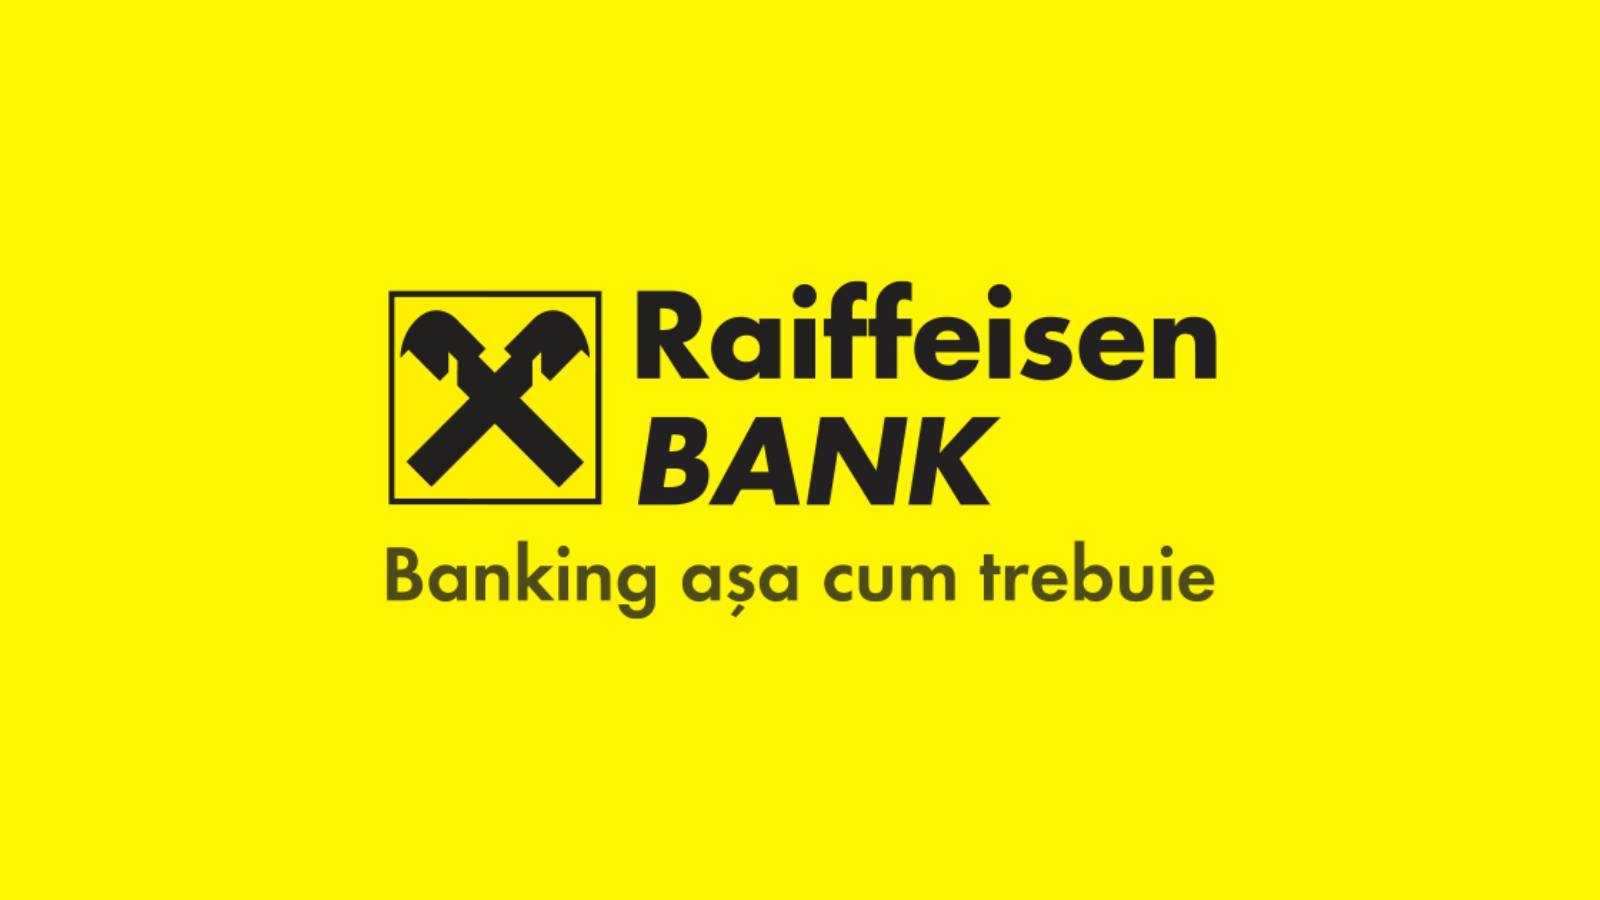 Raiffeisen Bank big